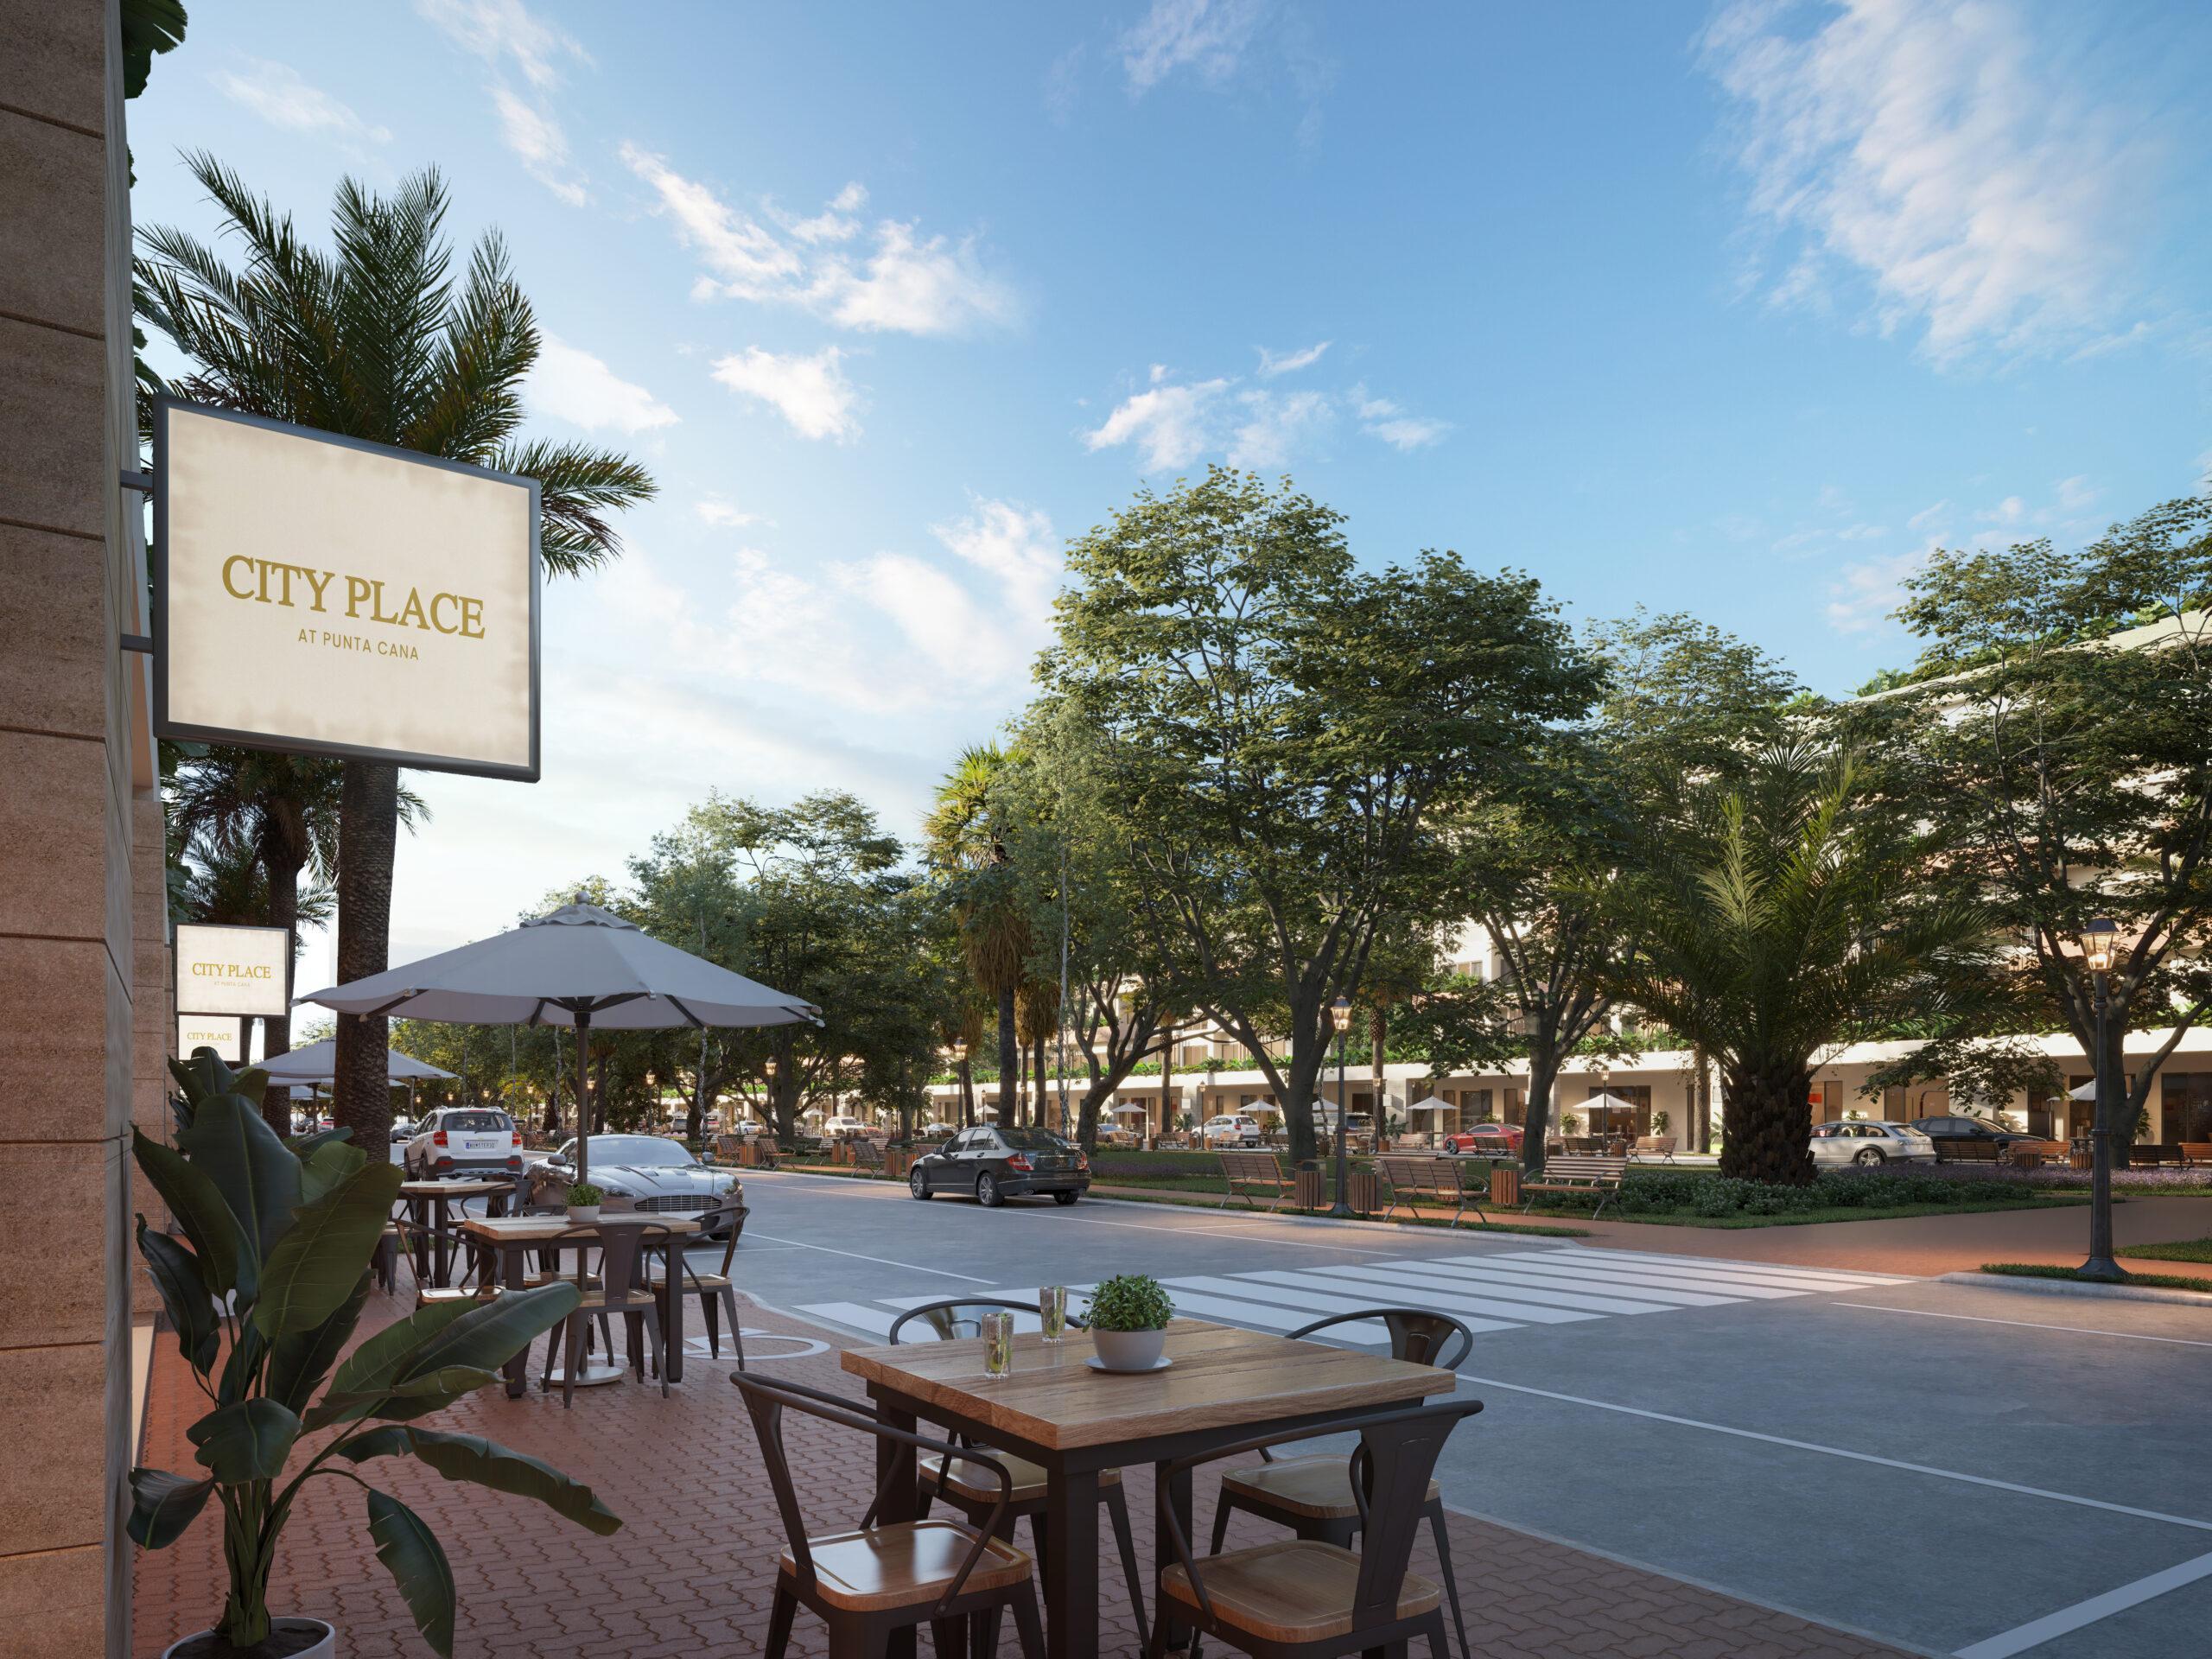 Hermosa vista del área comercial con el parque de City Place Punta Cana